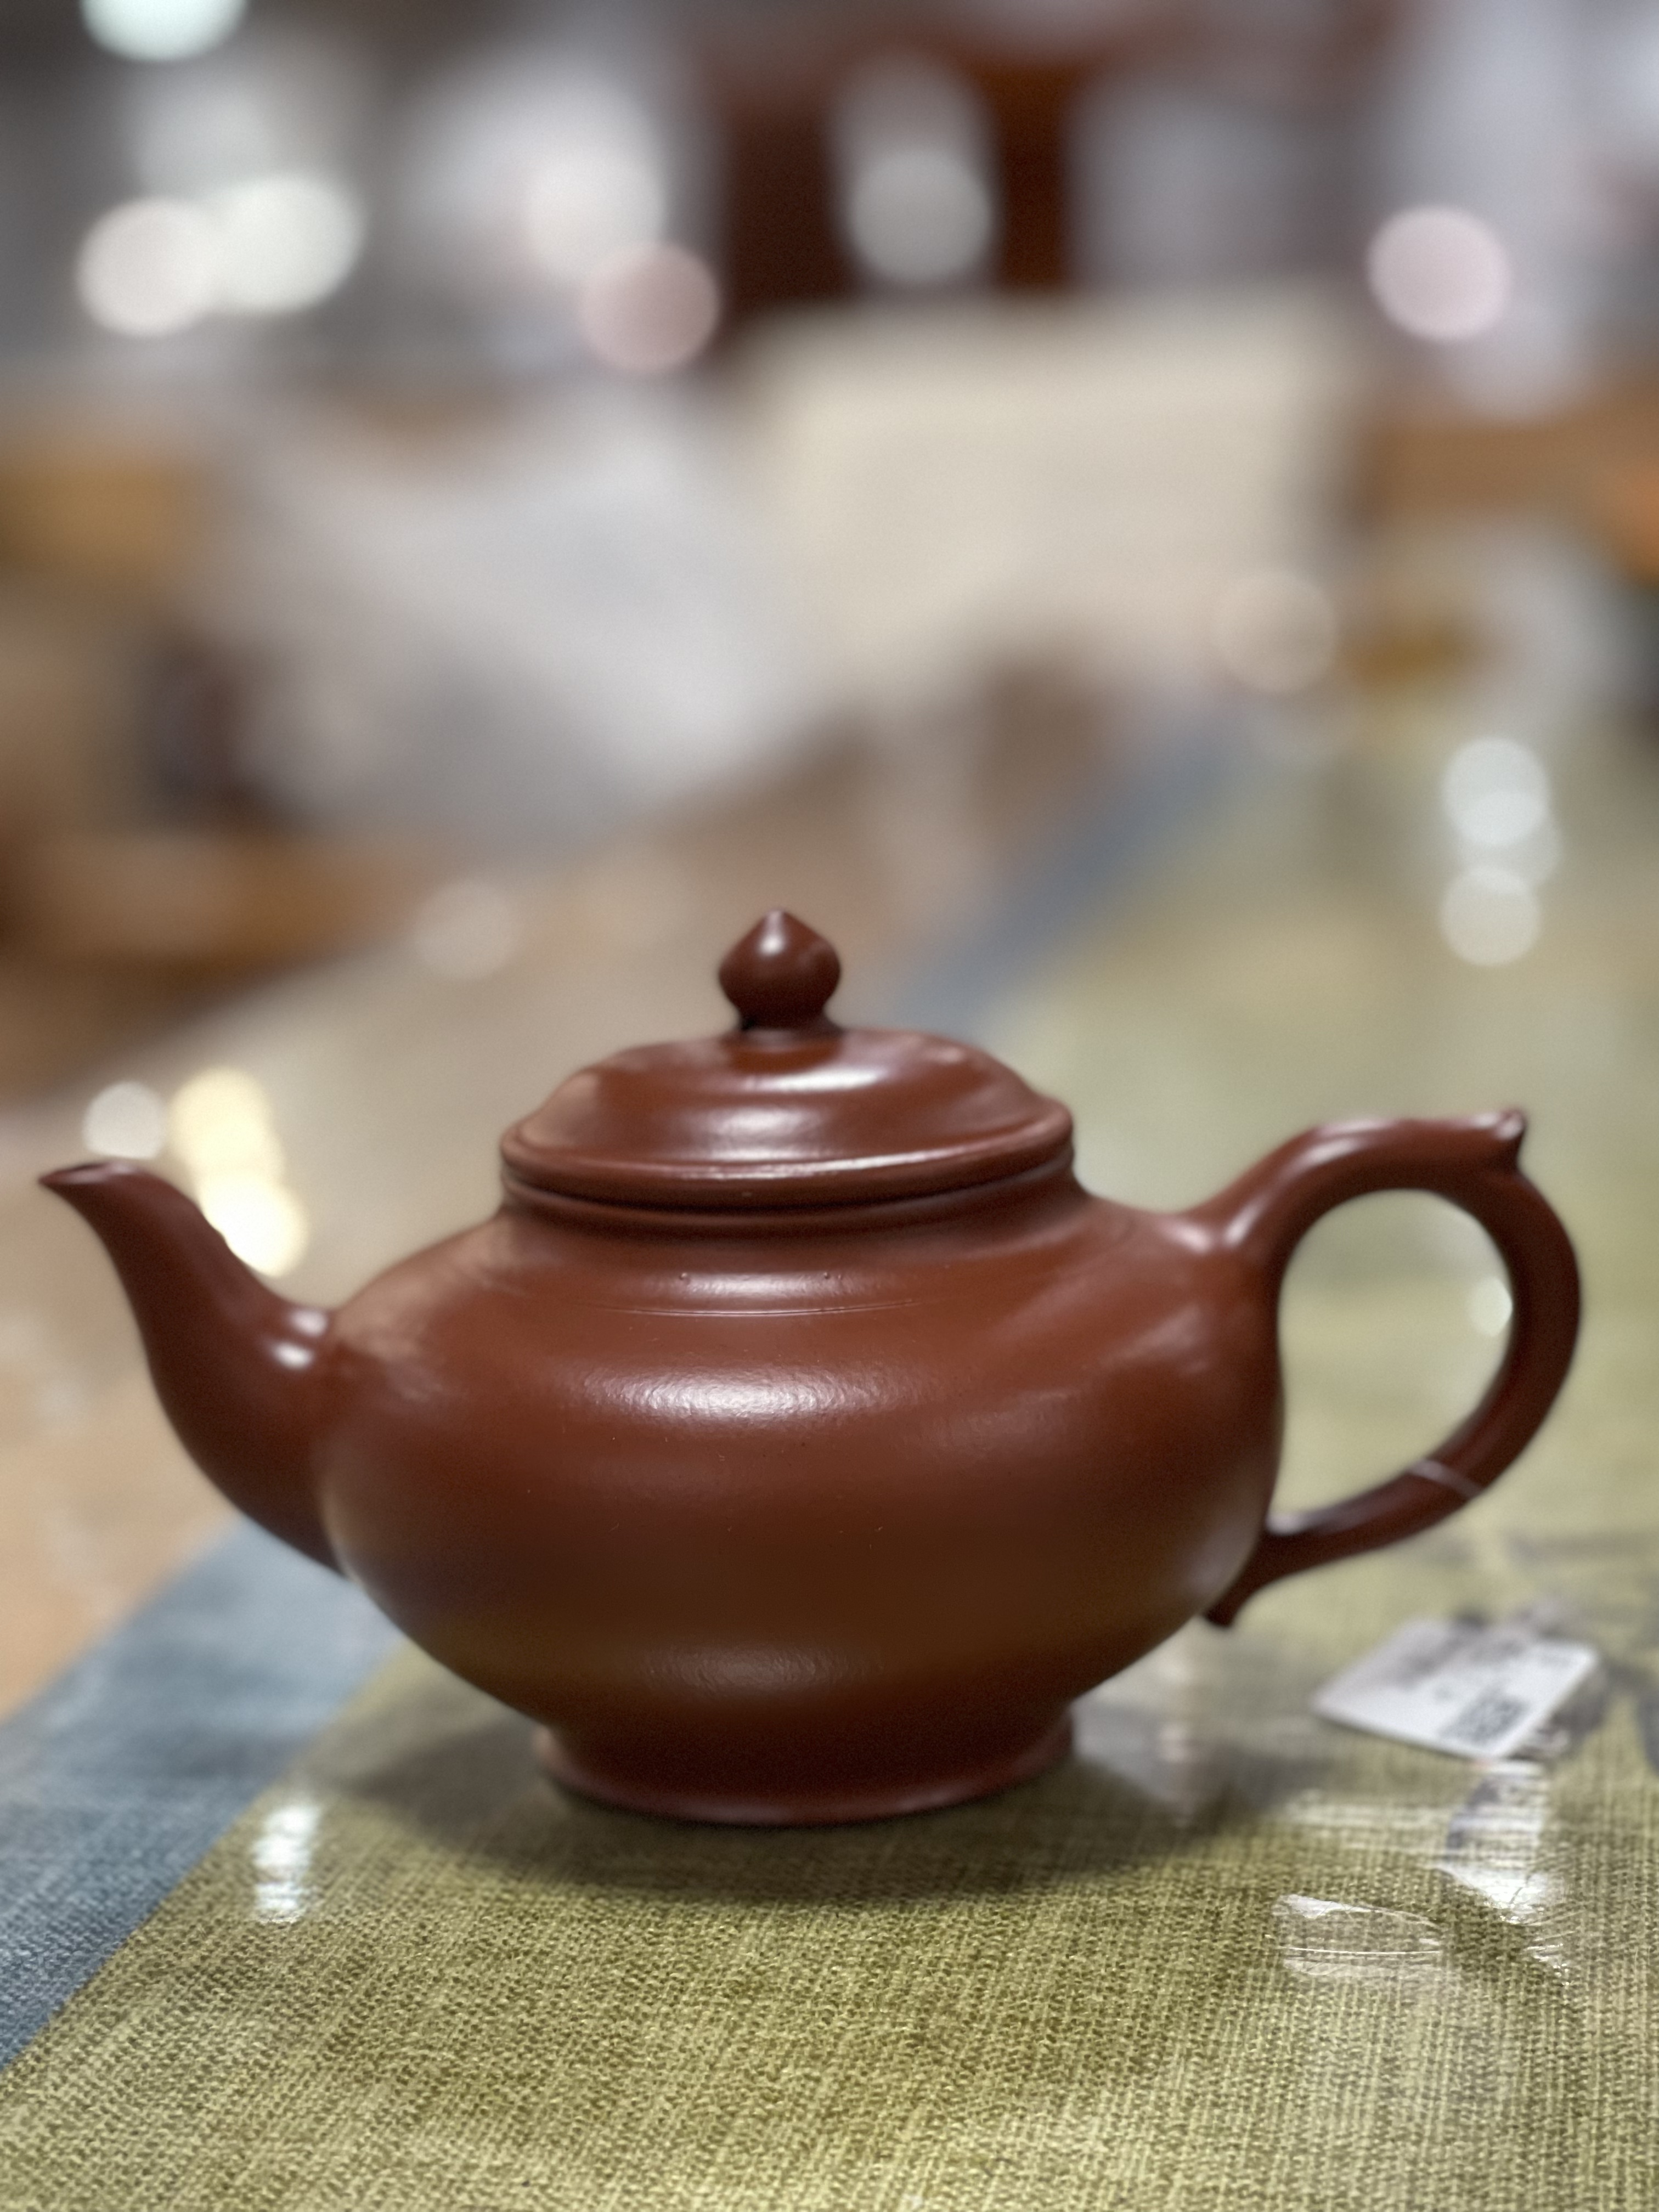 朱泥高手林天强紫砂壶作品笑樱原矿优质大红袍泡茶喝茶做工精细